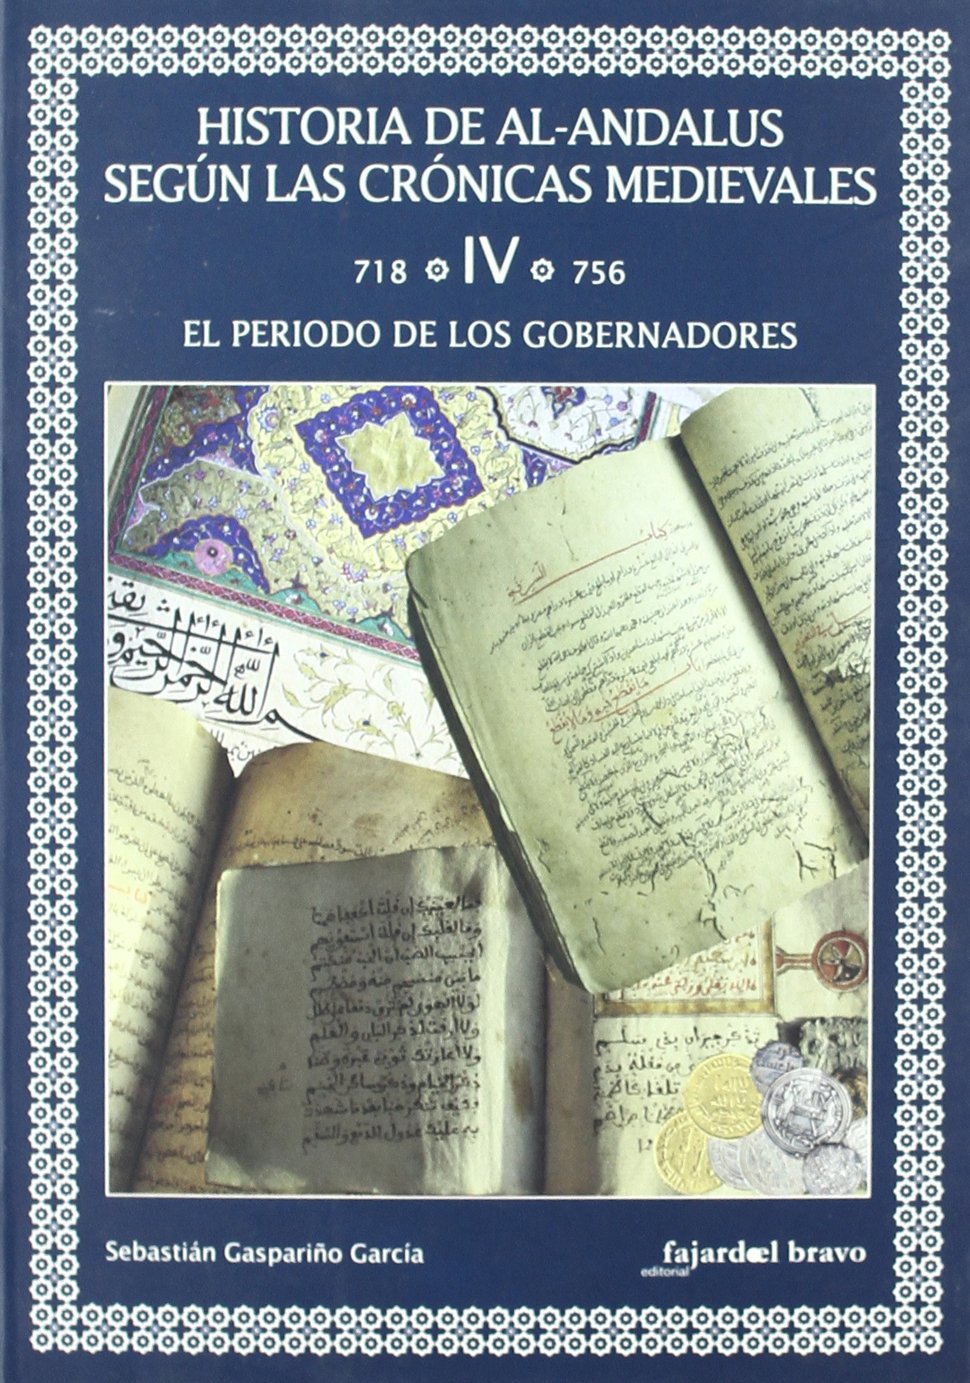 Historia de Al-Andalus según las Crónicas Medievales. Tomo IV (718-756). El período de los gobernadores Book Cover